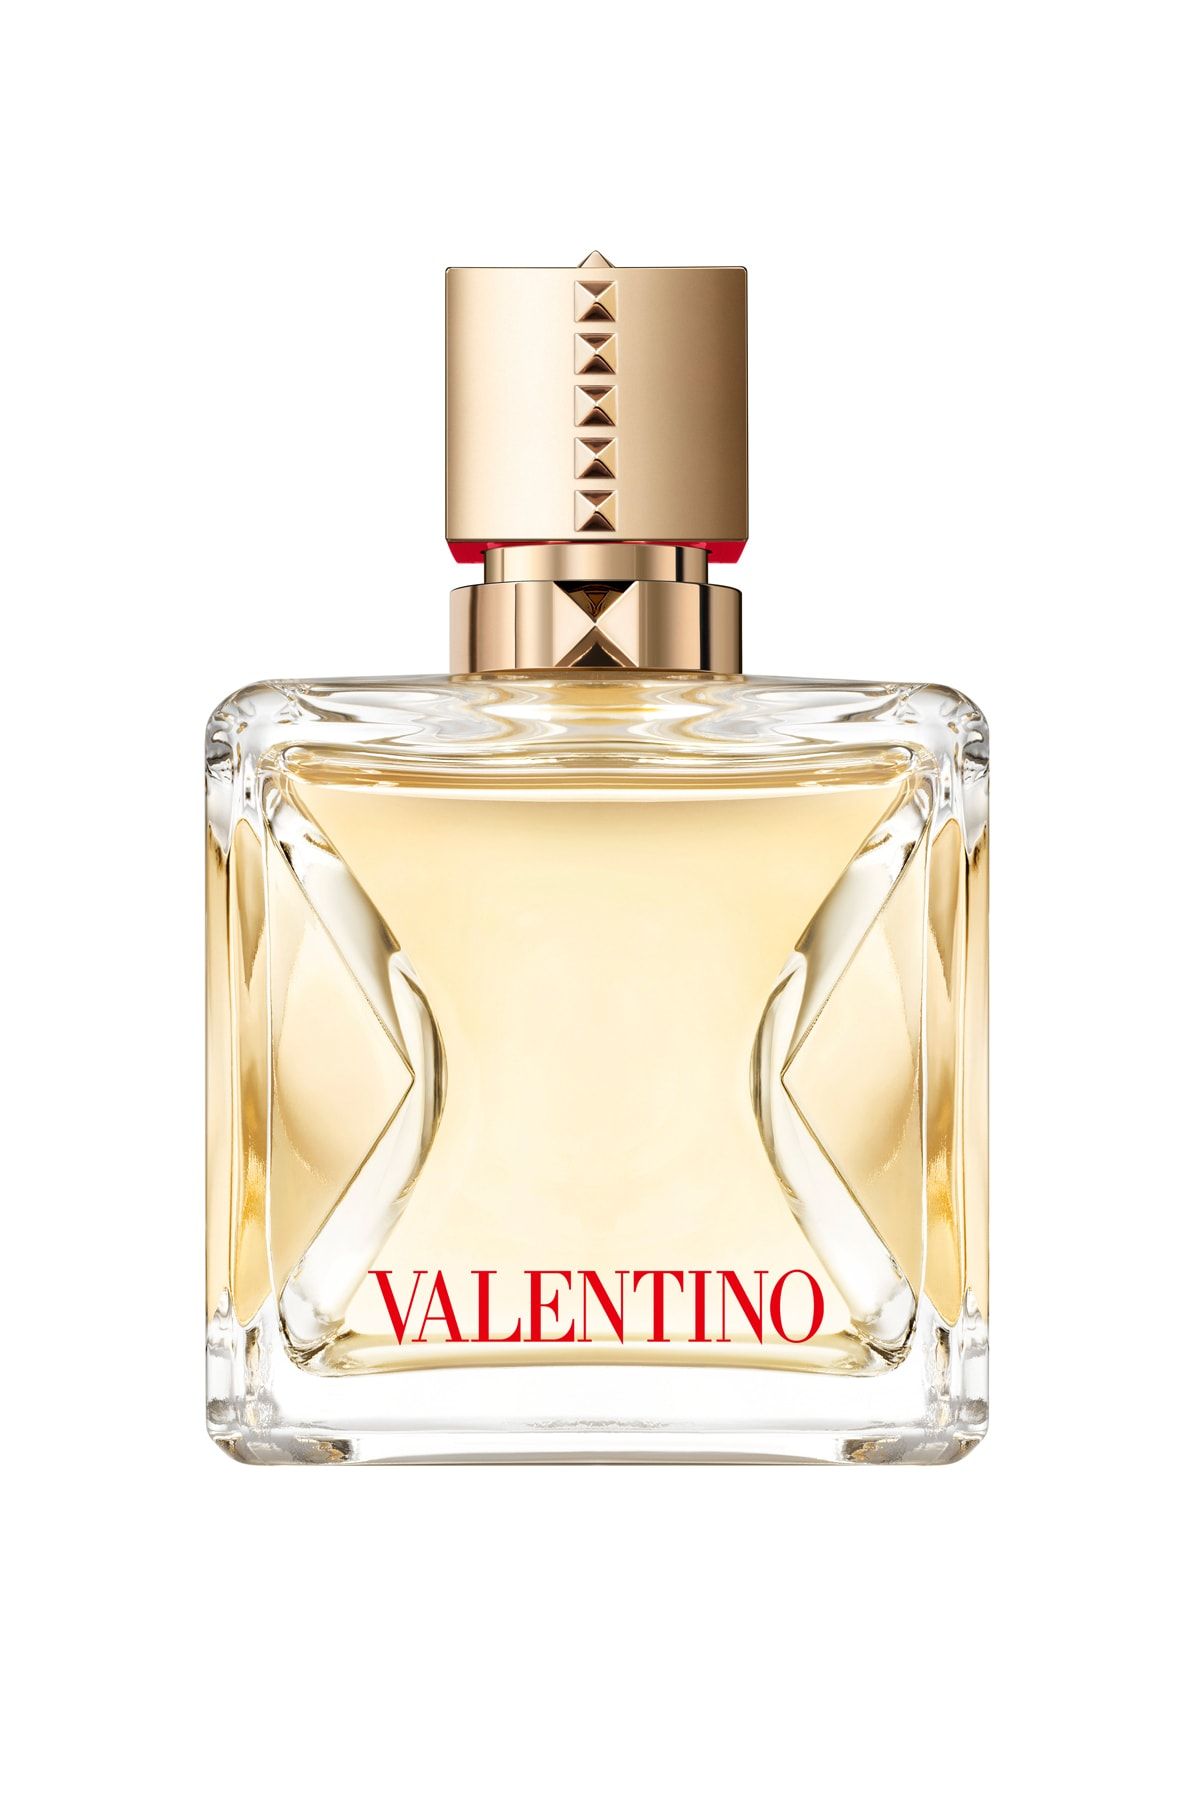 Valentino Voce Viva Kadin Eau De Parfum 100 ml 3614273073899